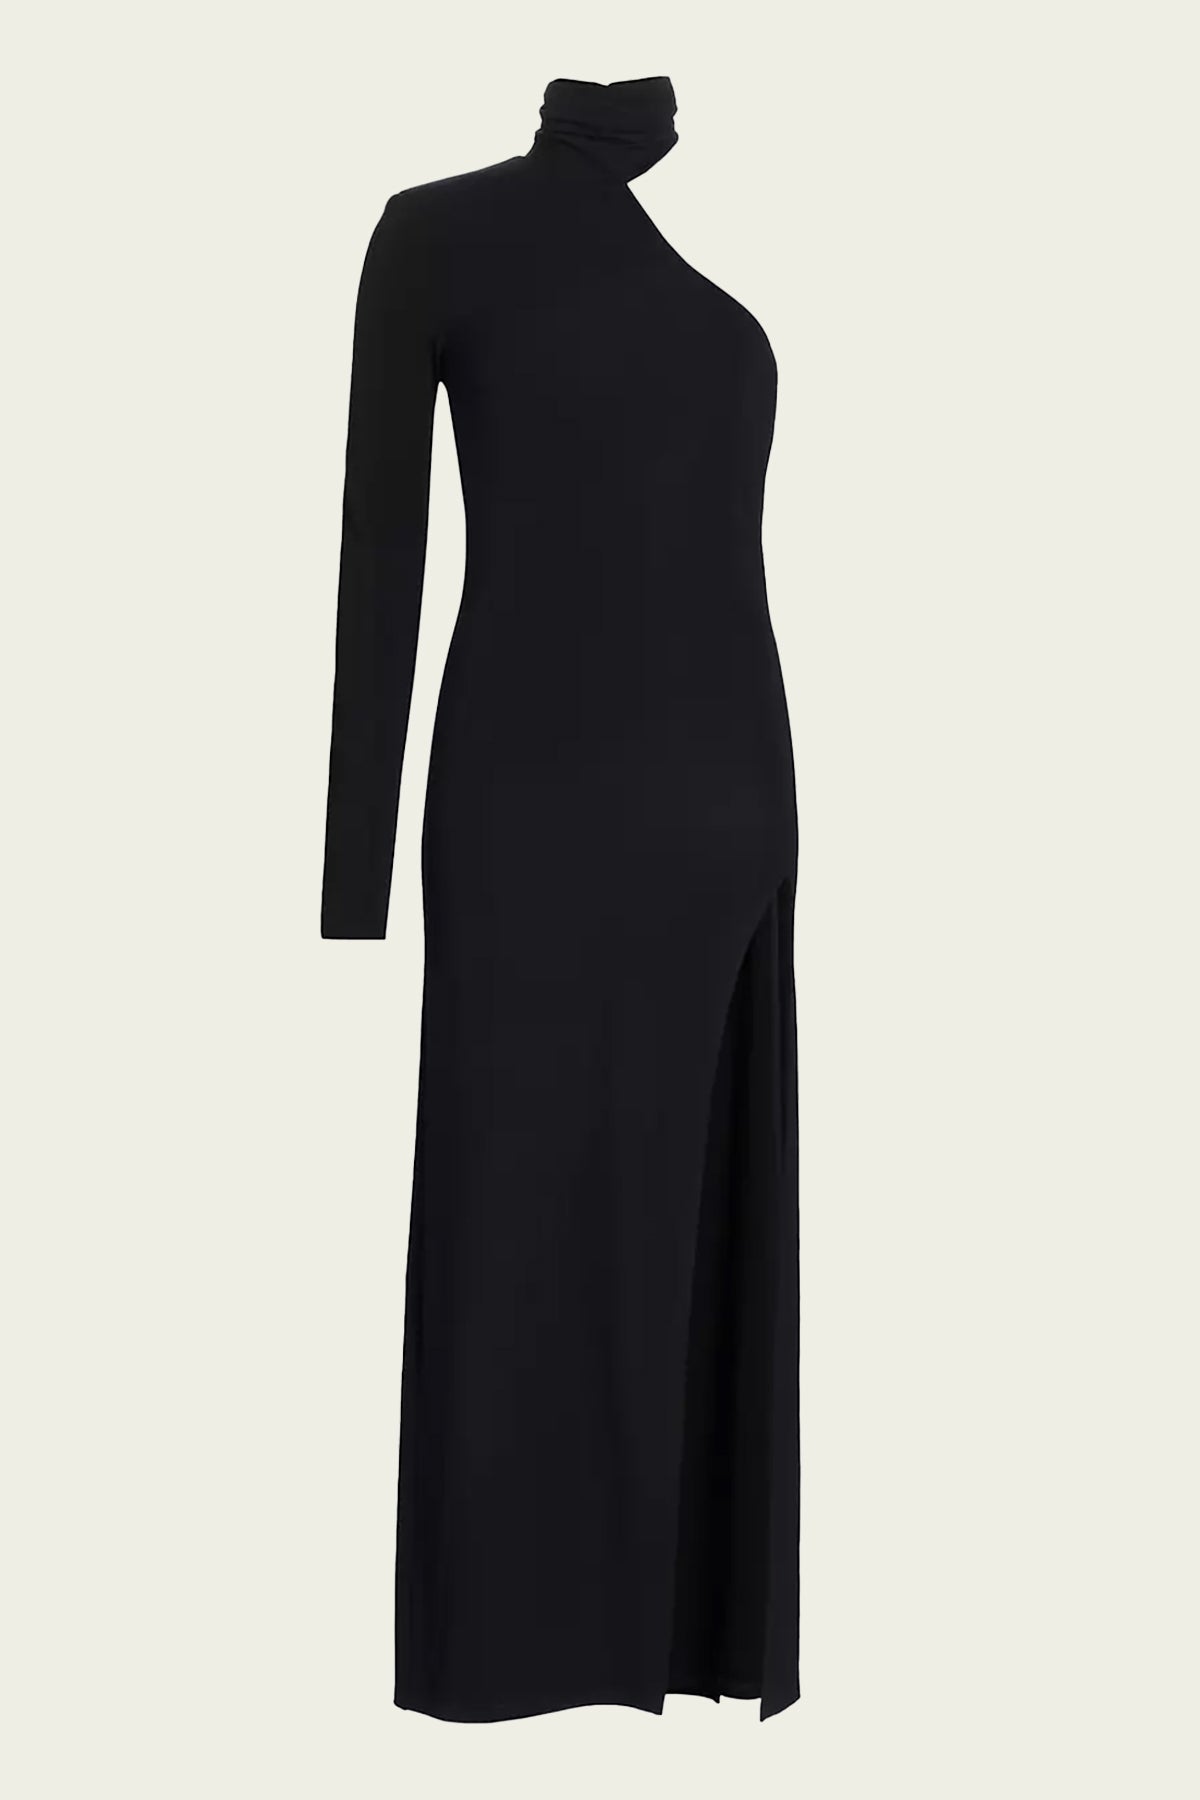 Rio Dress in Black - shop - olivia.com